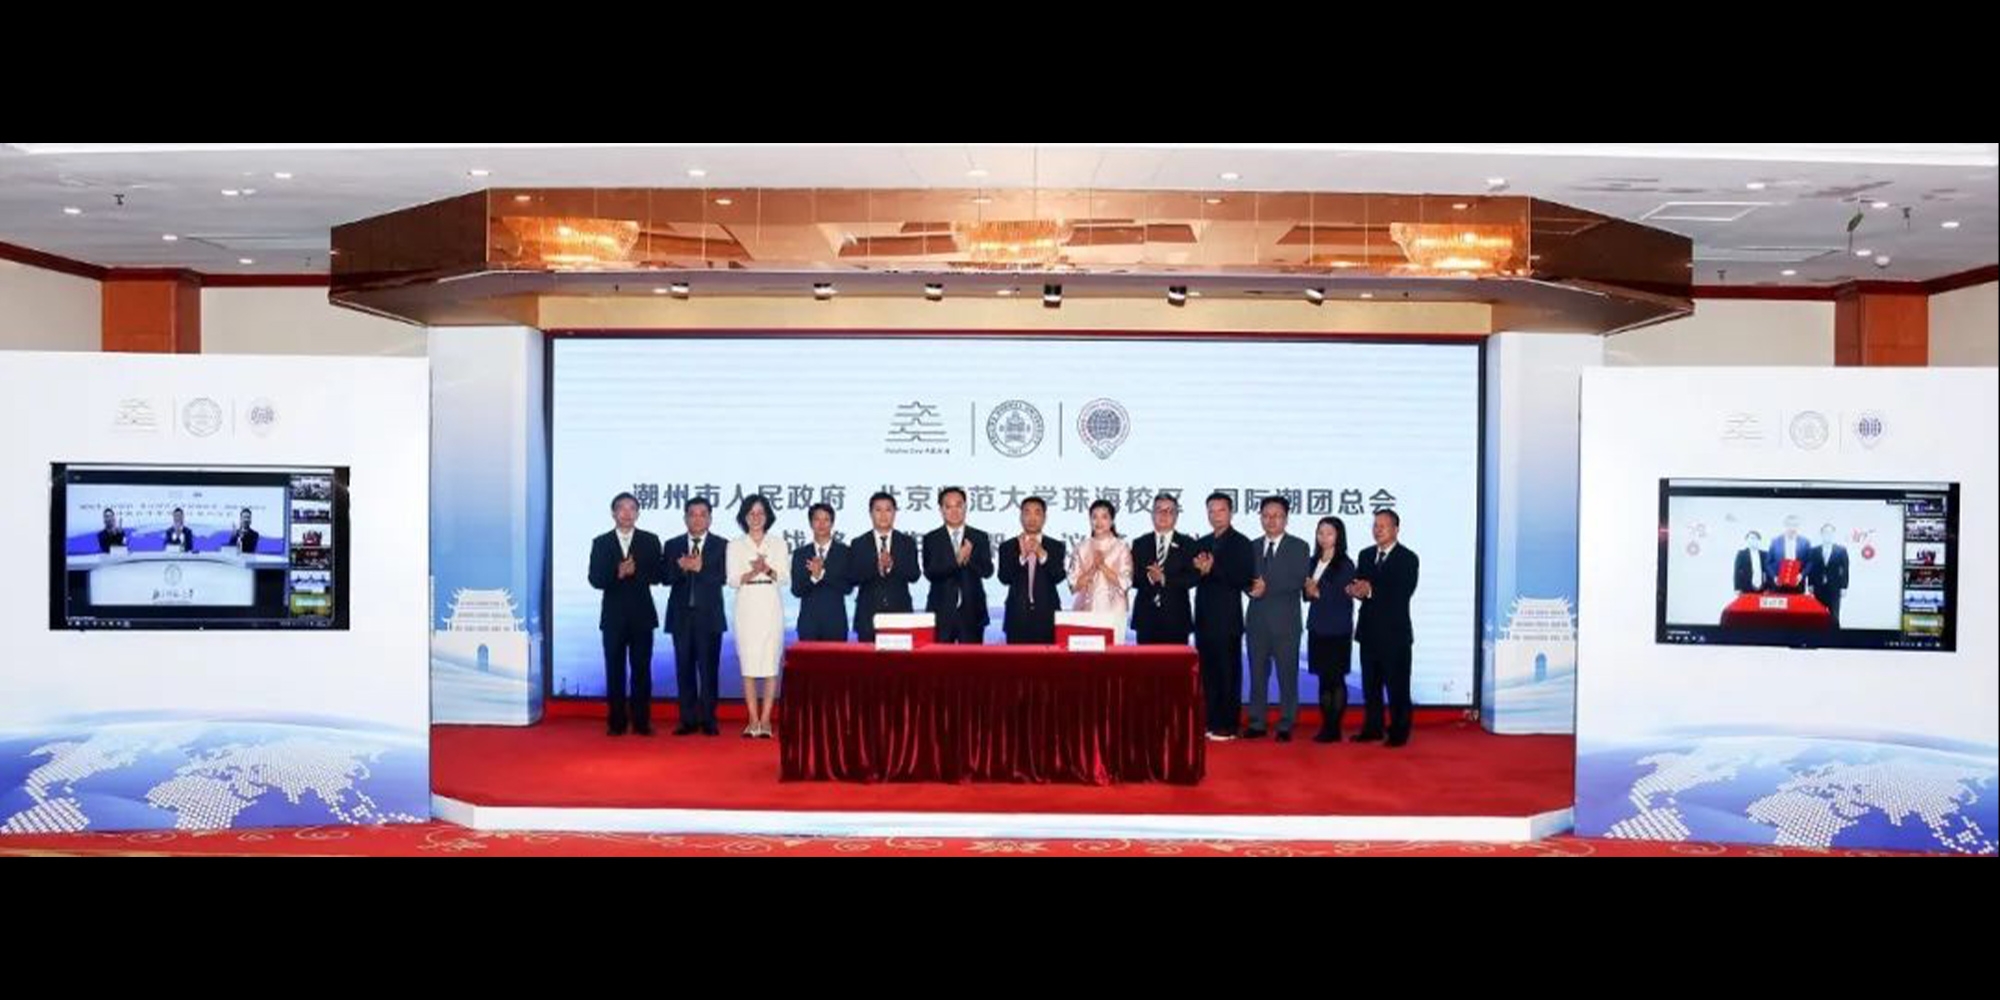 國際潮團總會與潮州市人民政府、北京師範大學珠海校區簽訂戰略合作框架協議暨世界潮人尋根地項目